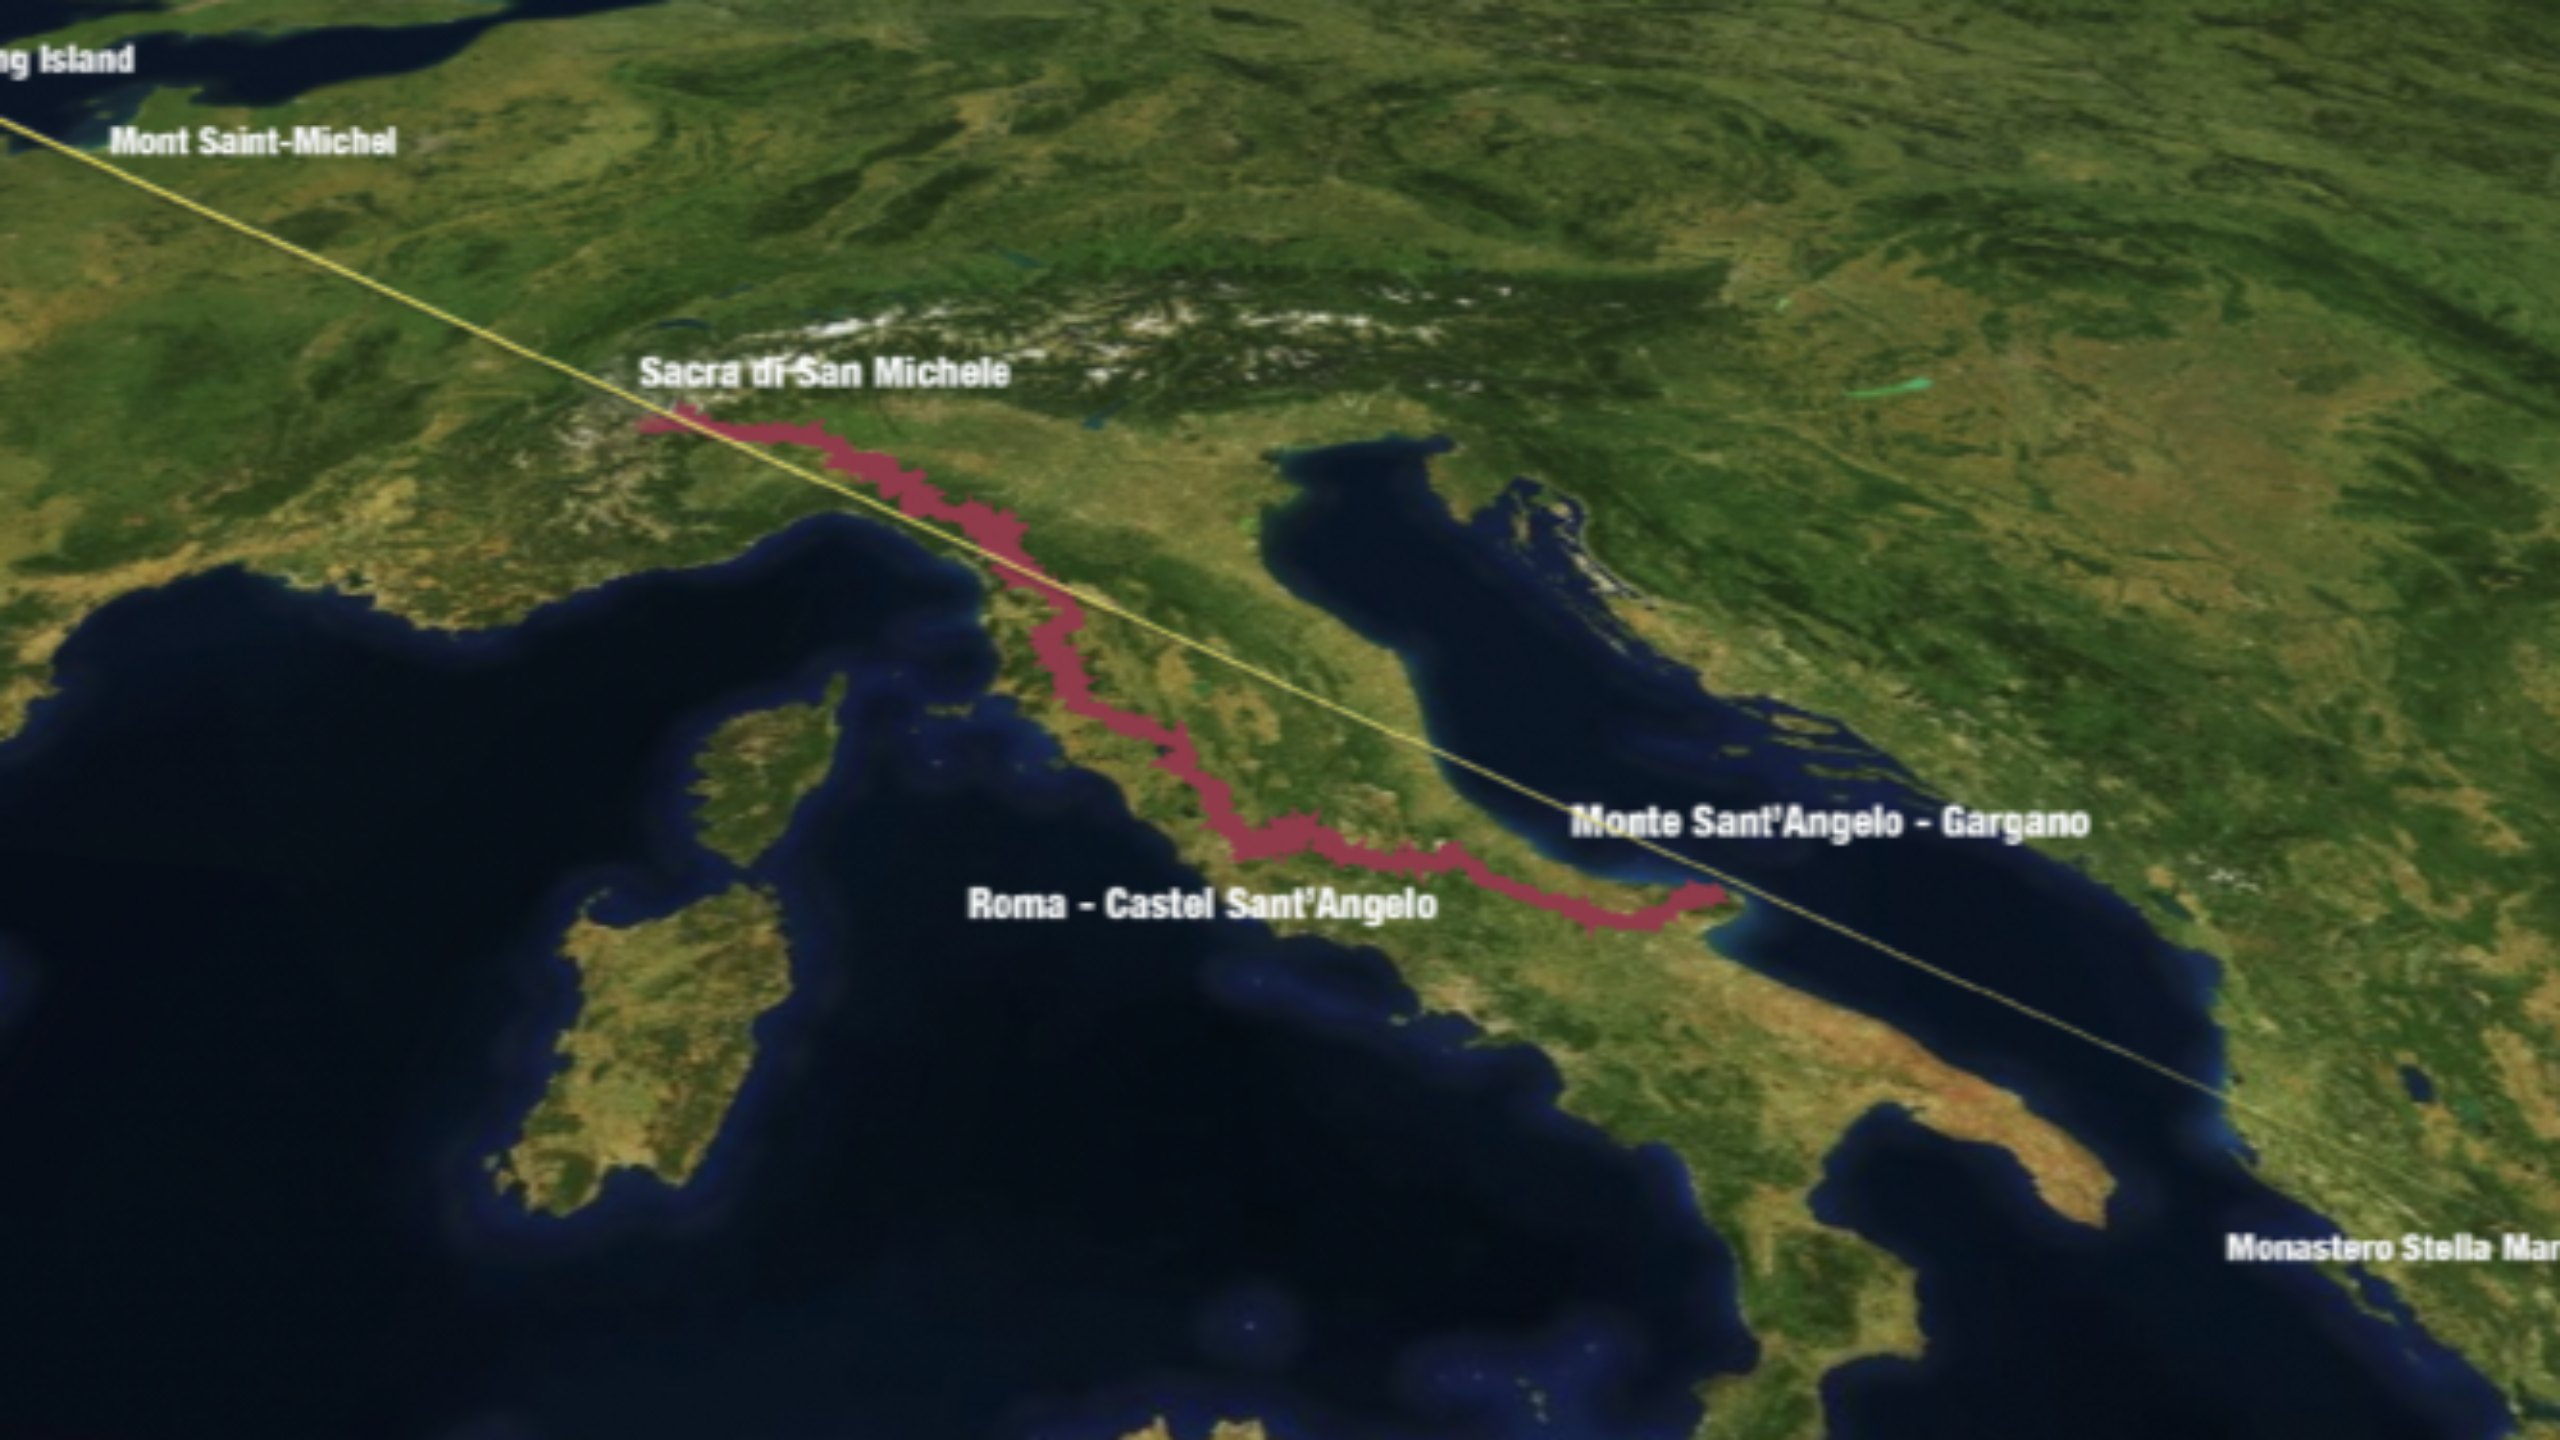 Pisa presenta il Cammino di San Michele, dalla Normandia a Gerusalemme.